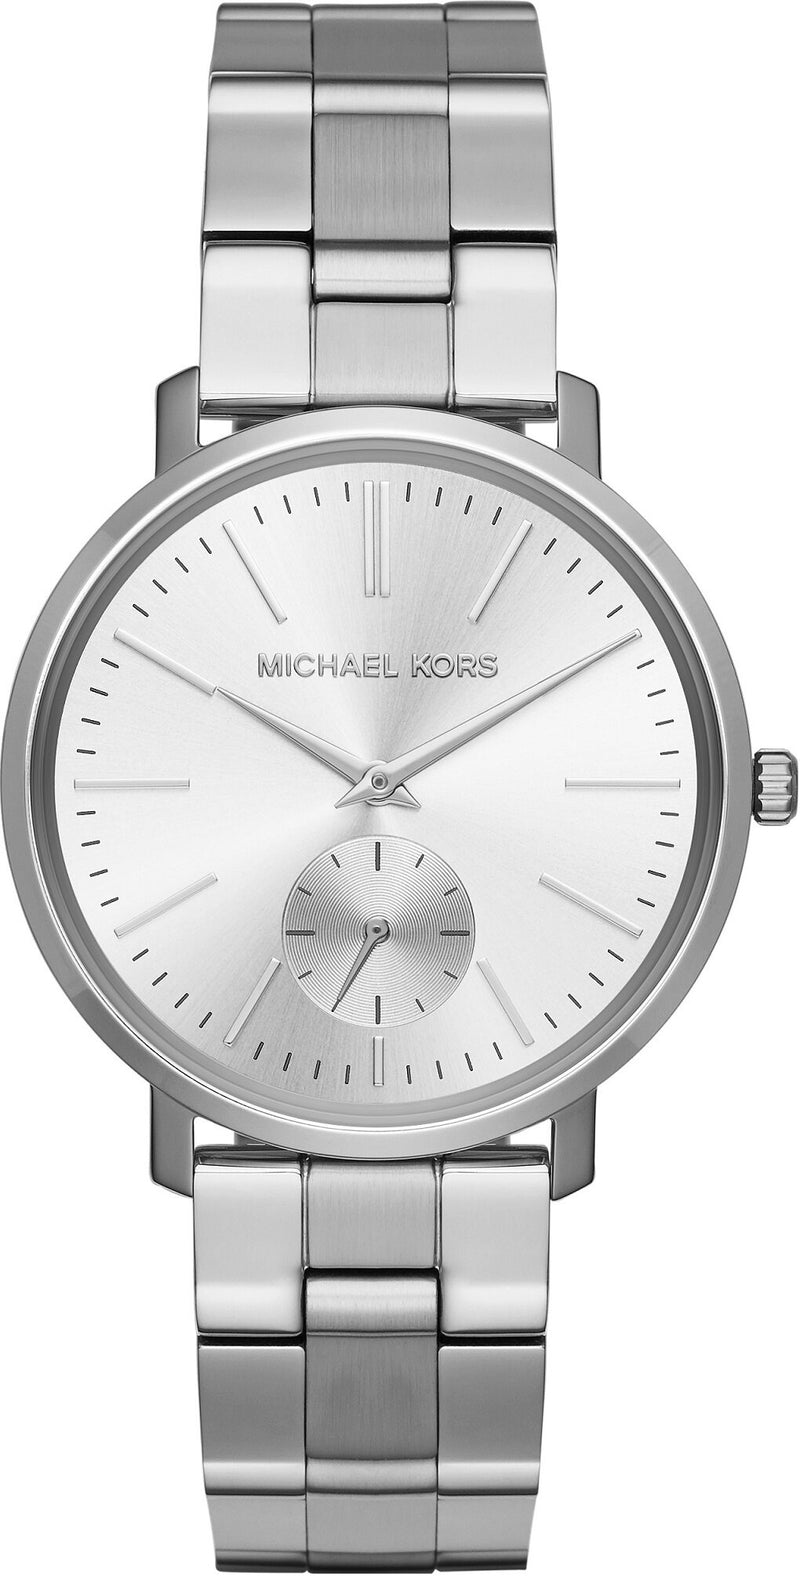 Michael Kors Jaryn Silver Dial Stainless Steel Ladies Watch MK3499 - Watches of America